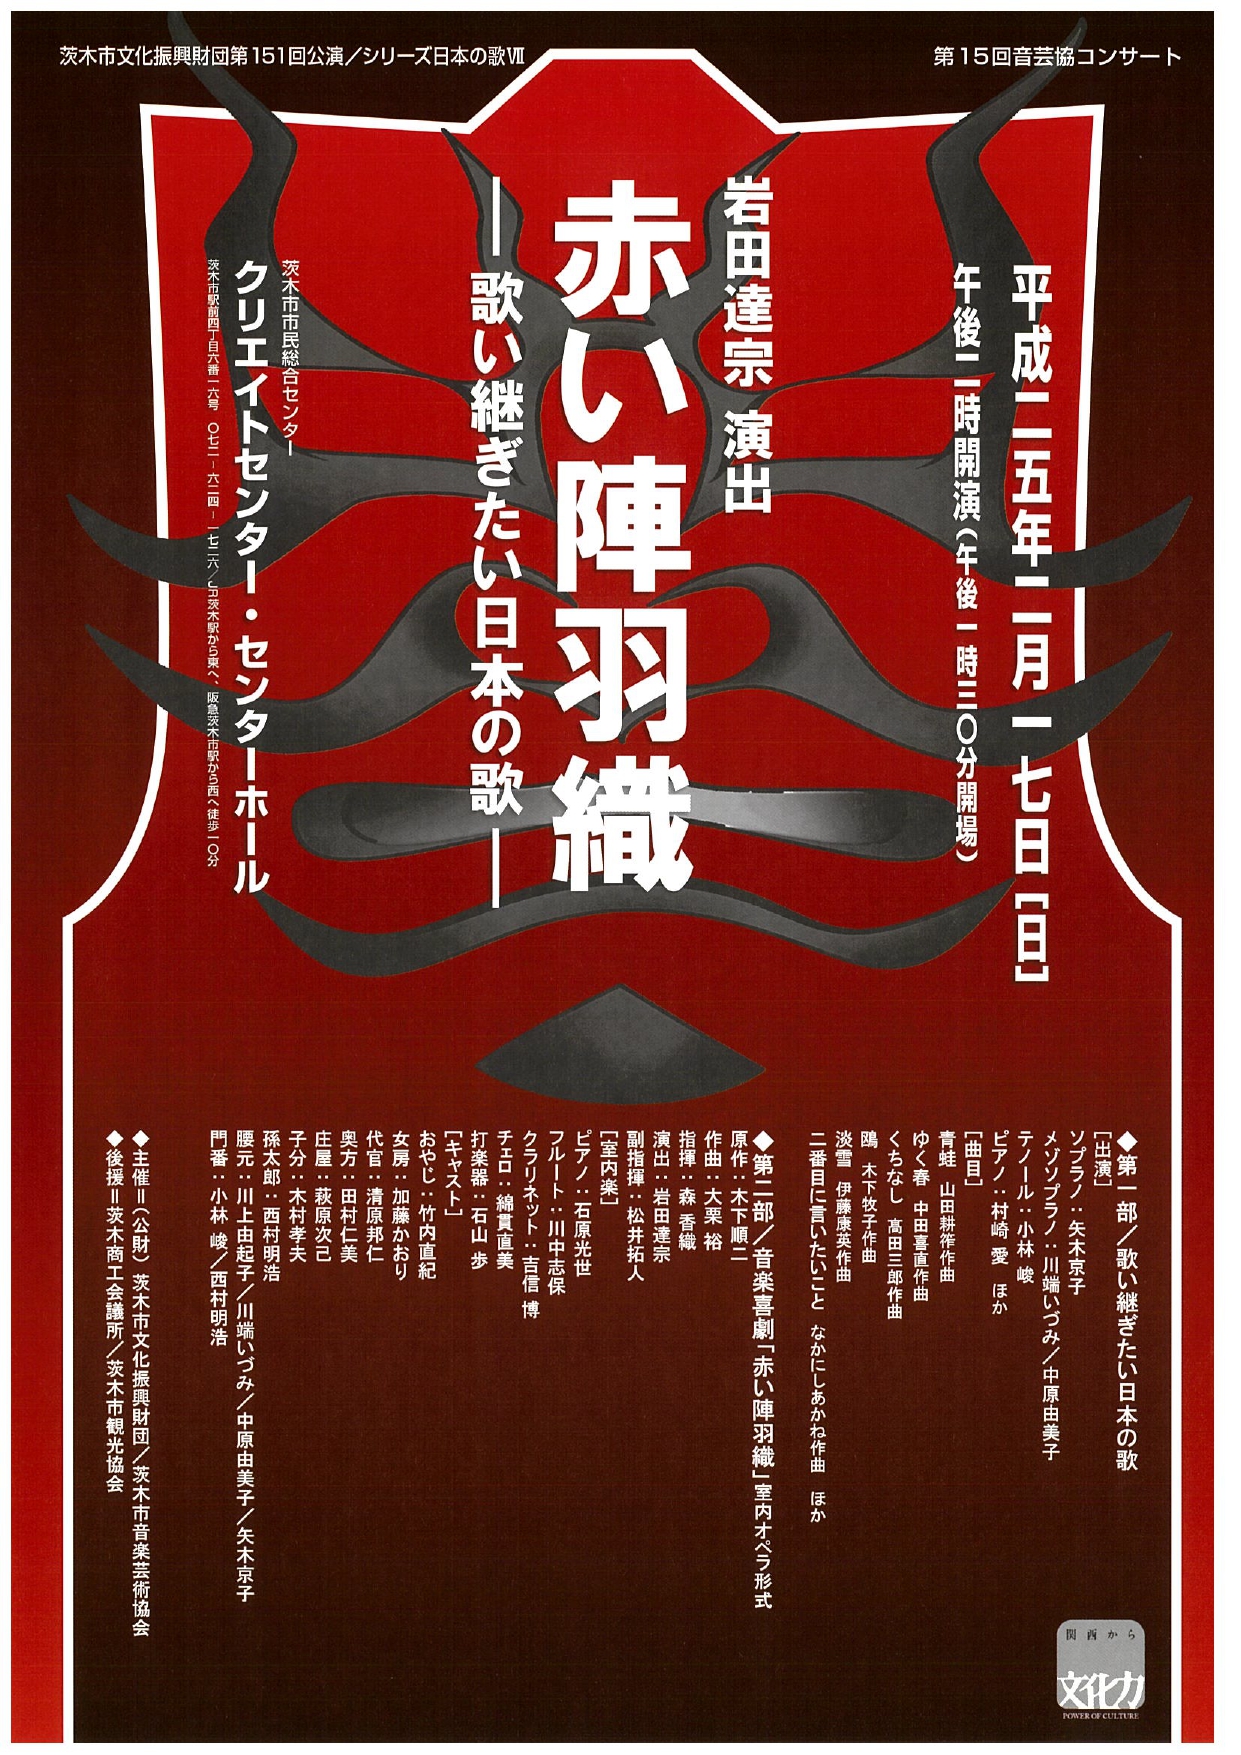 シリーズ日本の歌Ⅶ／第15 回音芸協コンサート 岩田達宗演出「赤い陣羽織」 ～歌い継ぎたい日本の歌～